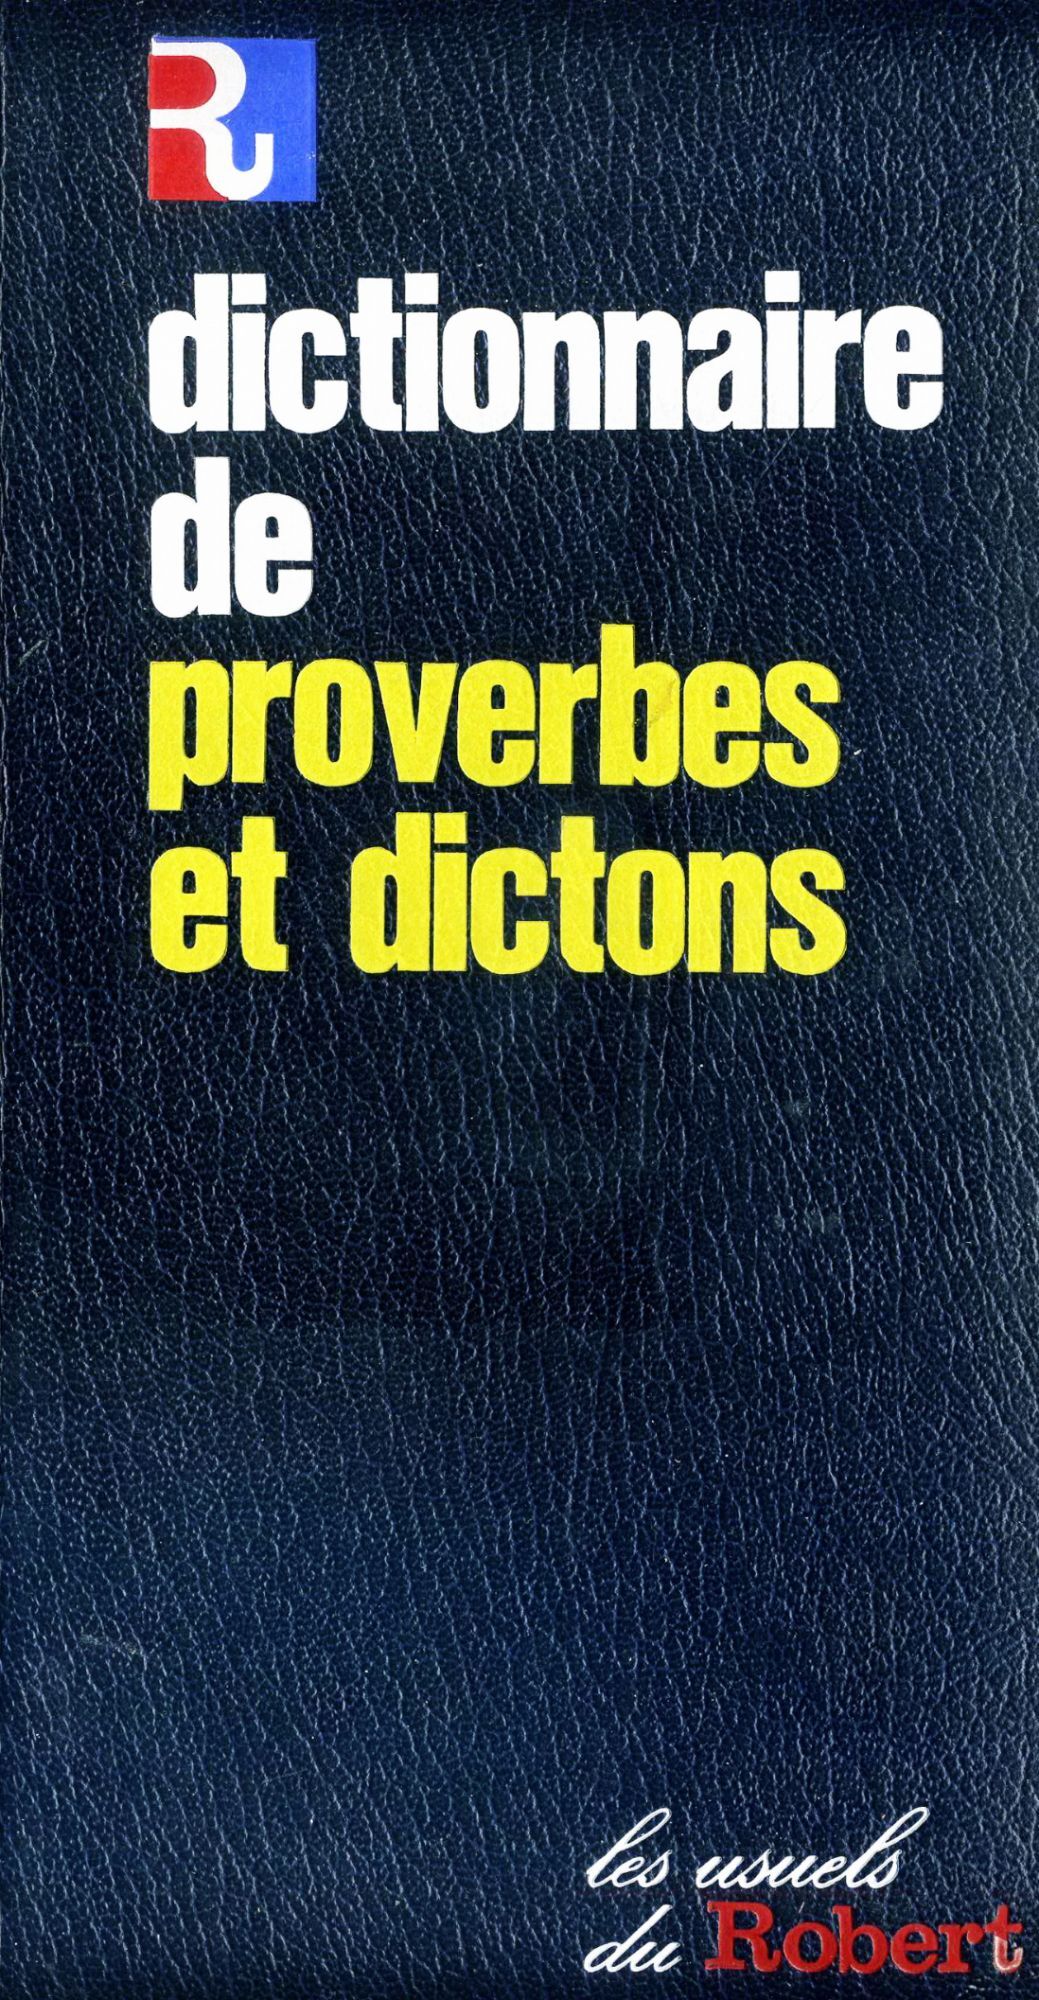 Couvertures Images Et Illustrations De Dictionnaire De Proverbes Et Dictons De Agnes Pierron Florence Montreynaud